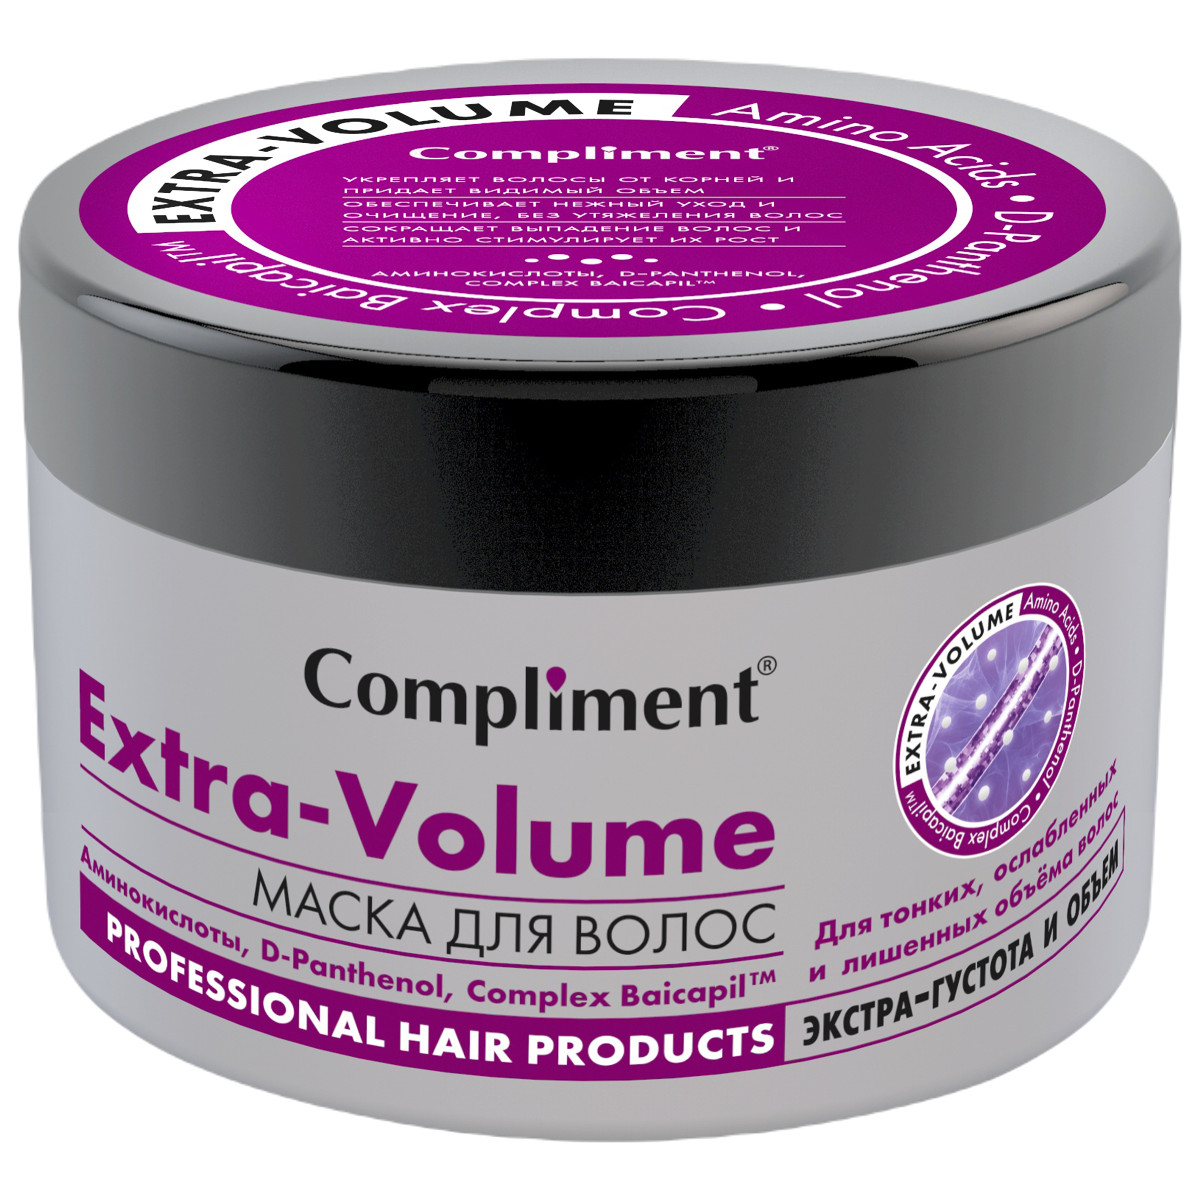 Маска для волос Extra Volume Экстра-густота и объем, 500 мл, Compliment